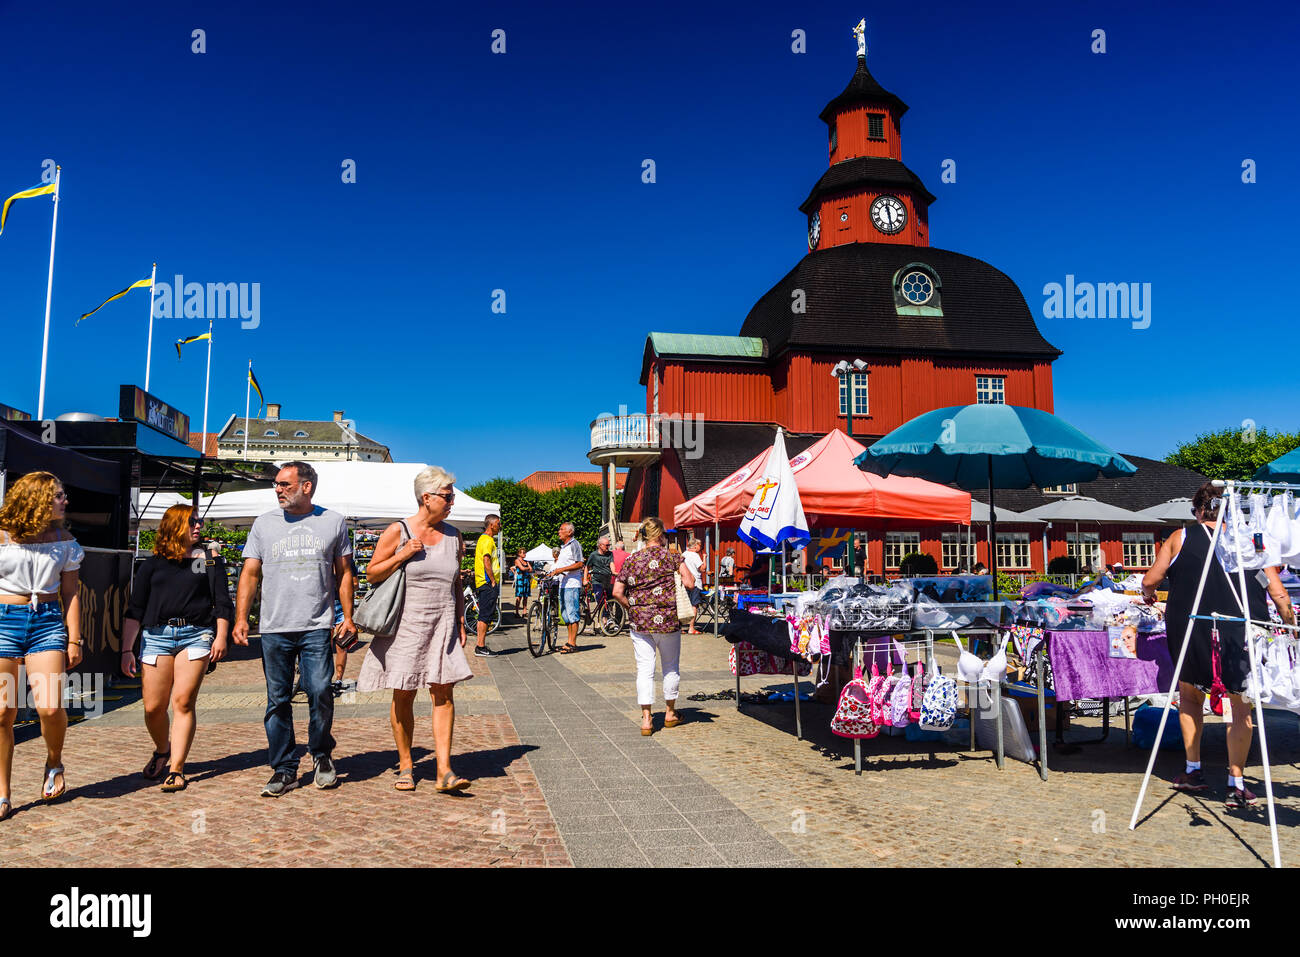 Lidkoping, Suède - le 4 juillet 2018 : Jour de marché avec les gens et les étals de marché en face de l'hôtel de ville rouge, une fois qu'un château de chasse, sur un jour d'été ensoleillé Banque D'Images